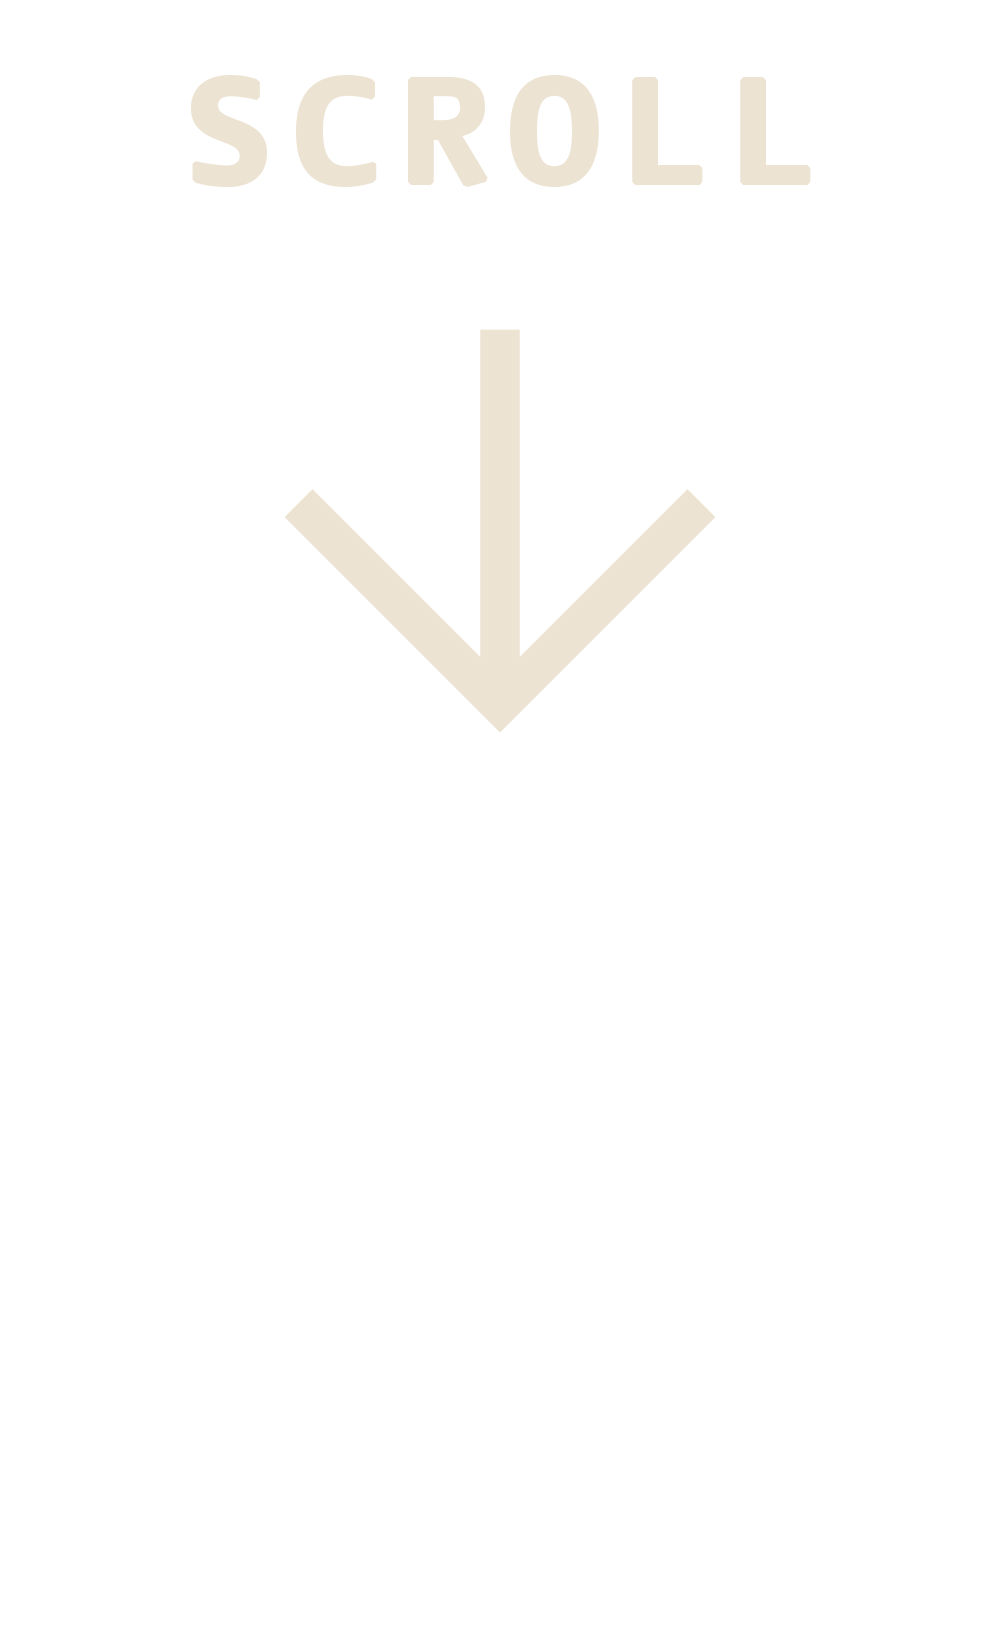 custom-cover-arrow